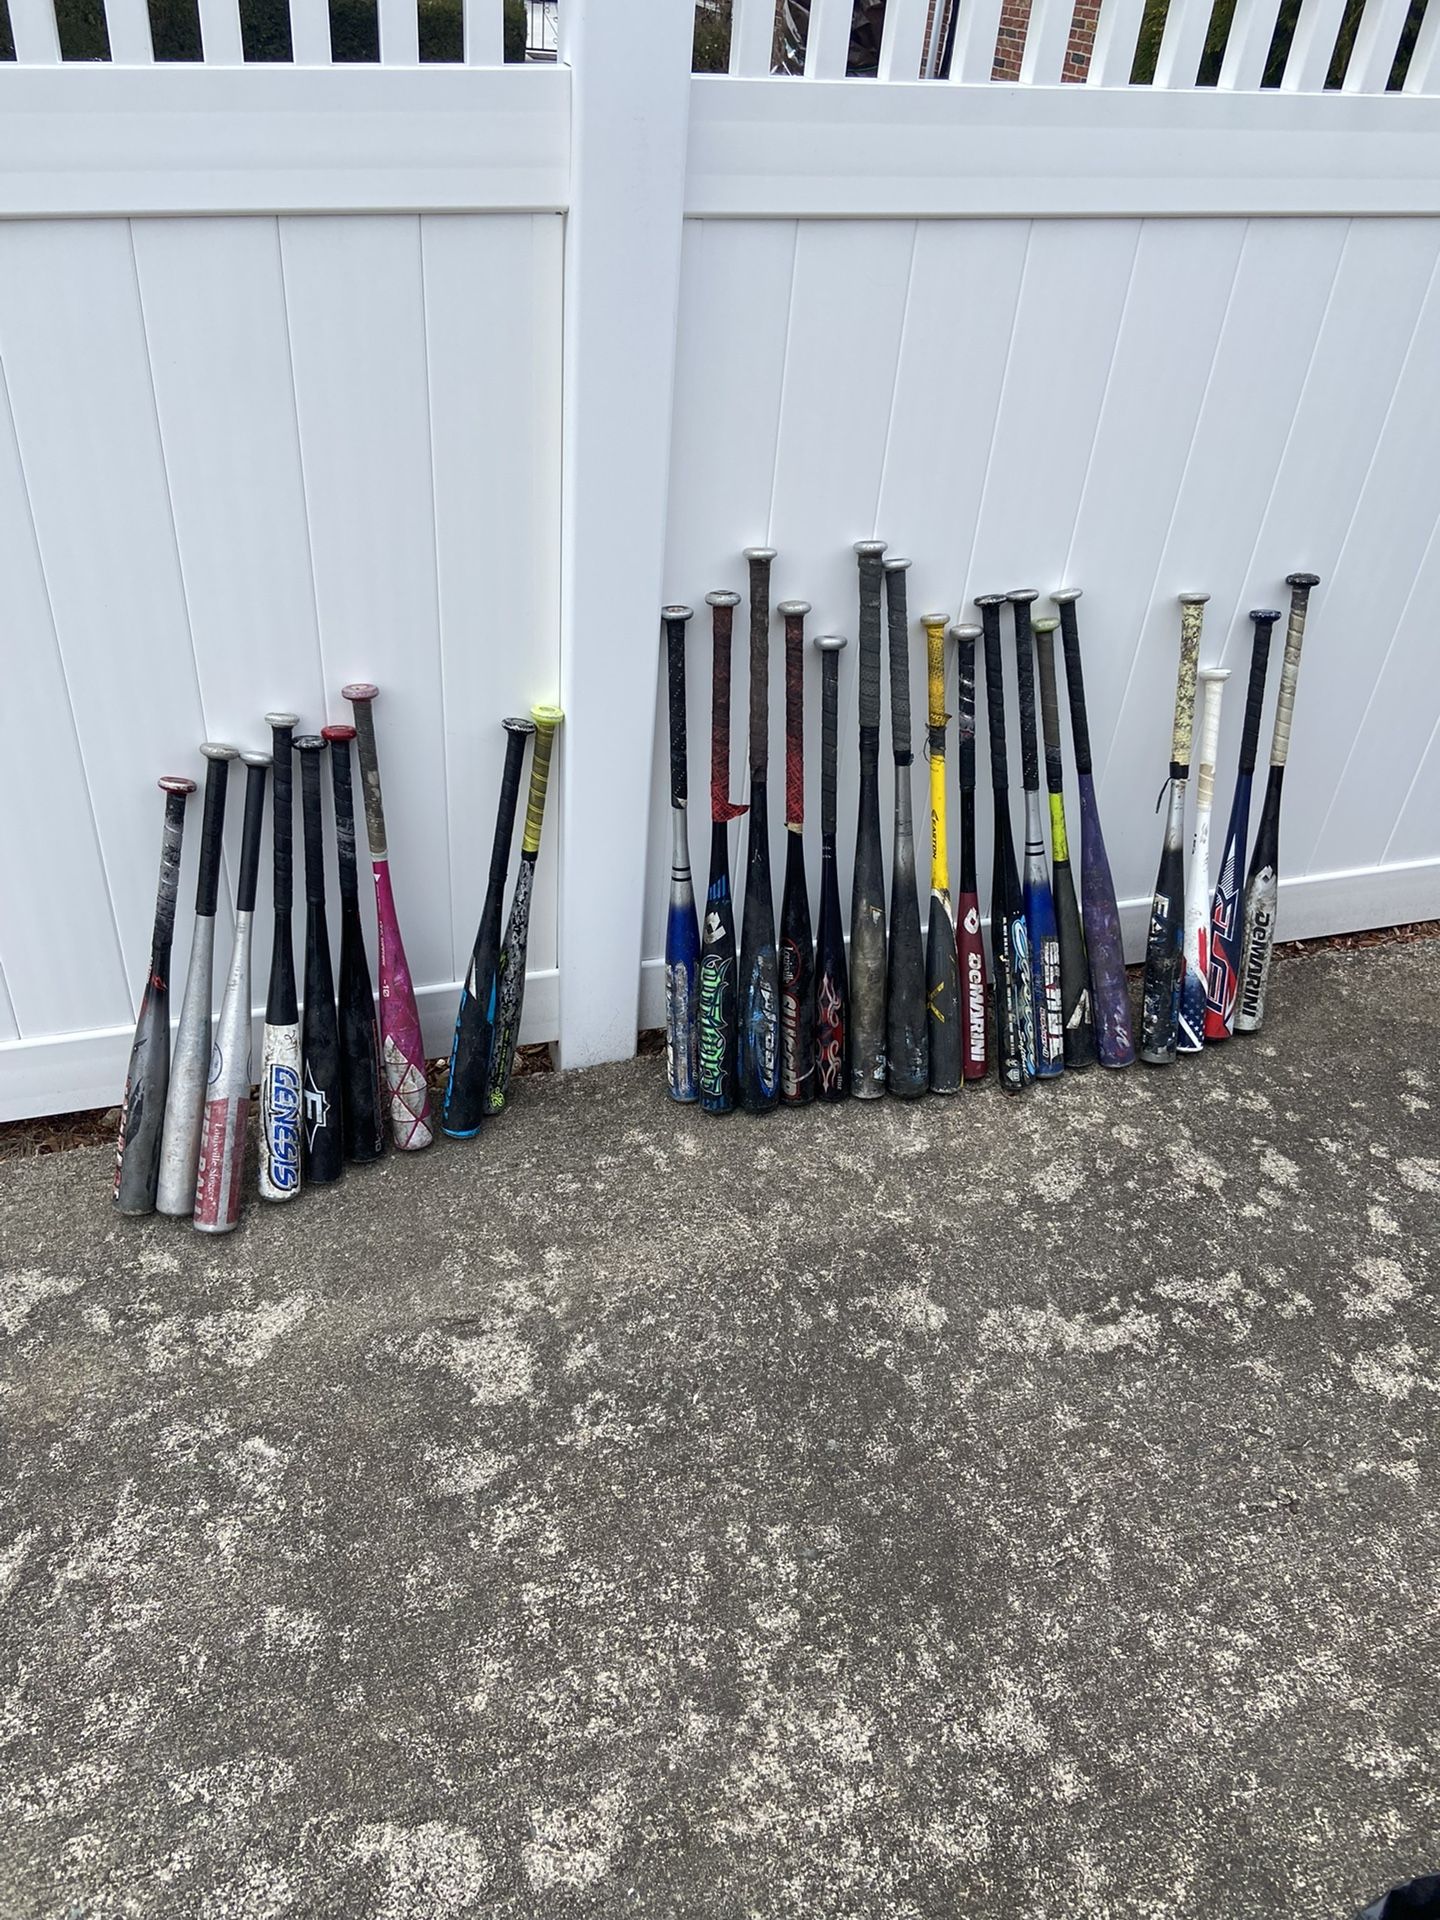 Used Baseball Bats